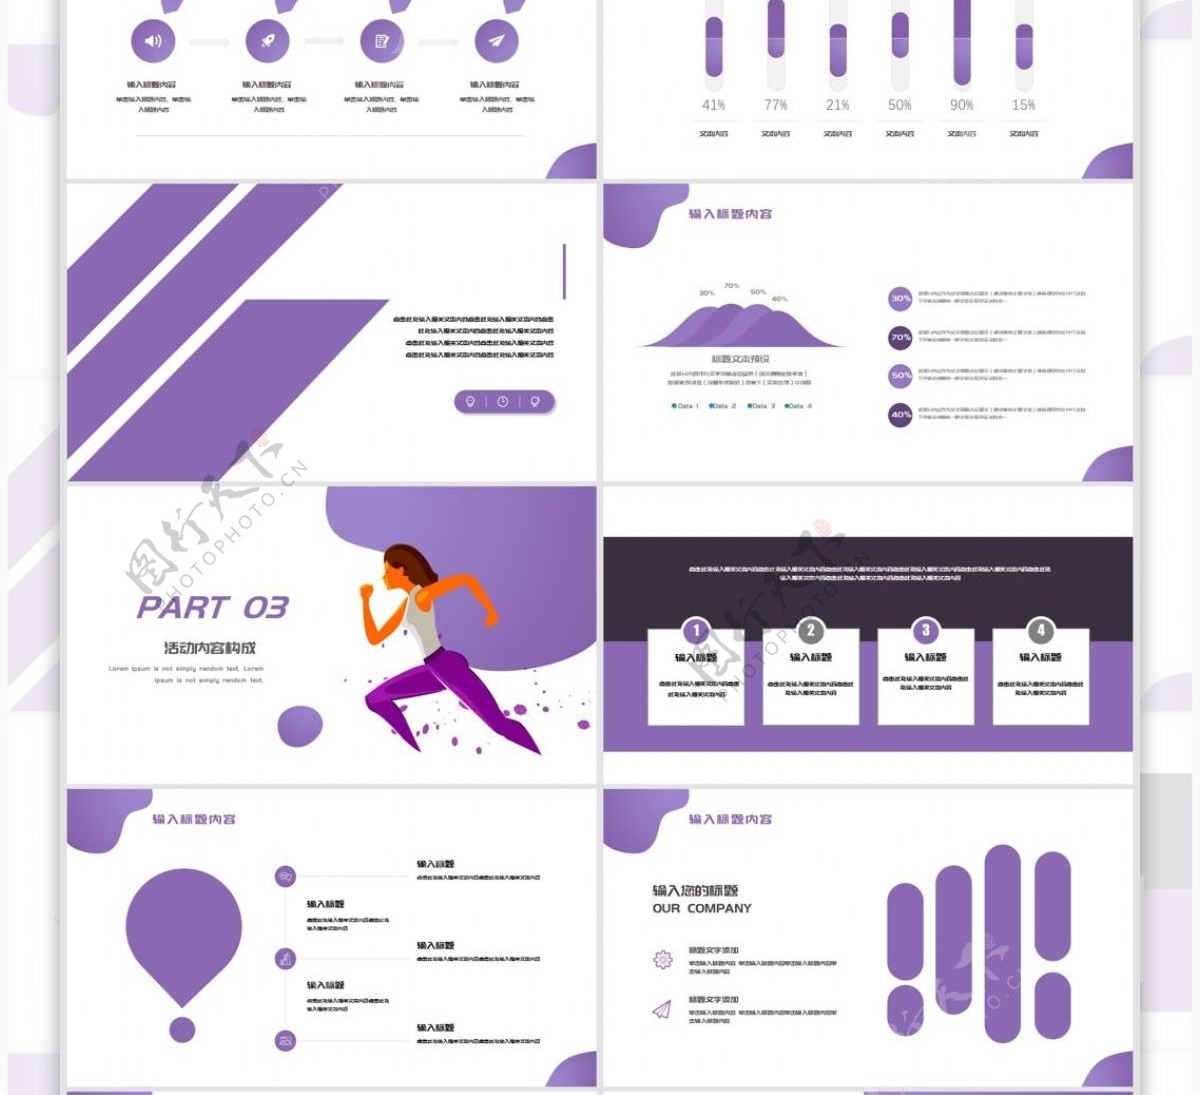 2019紫色天猫跑步节活动策划PPT模板